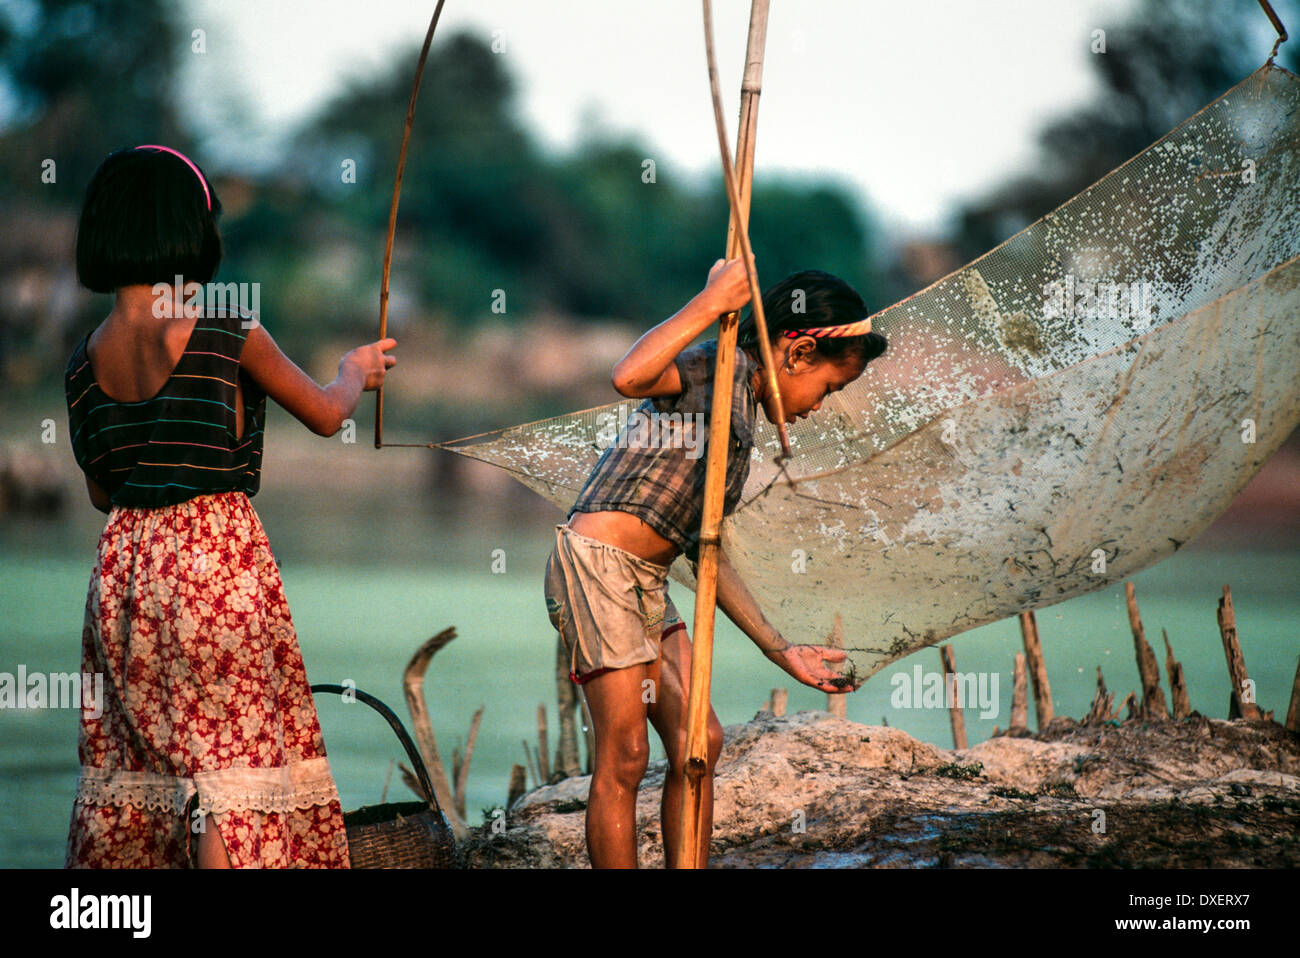 Laos niños red de pesca cañas de bambú árboles de la ribera del río sol blue water boys girls Foto de stock